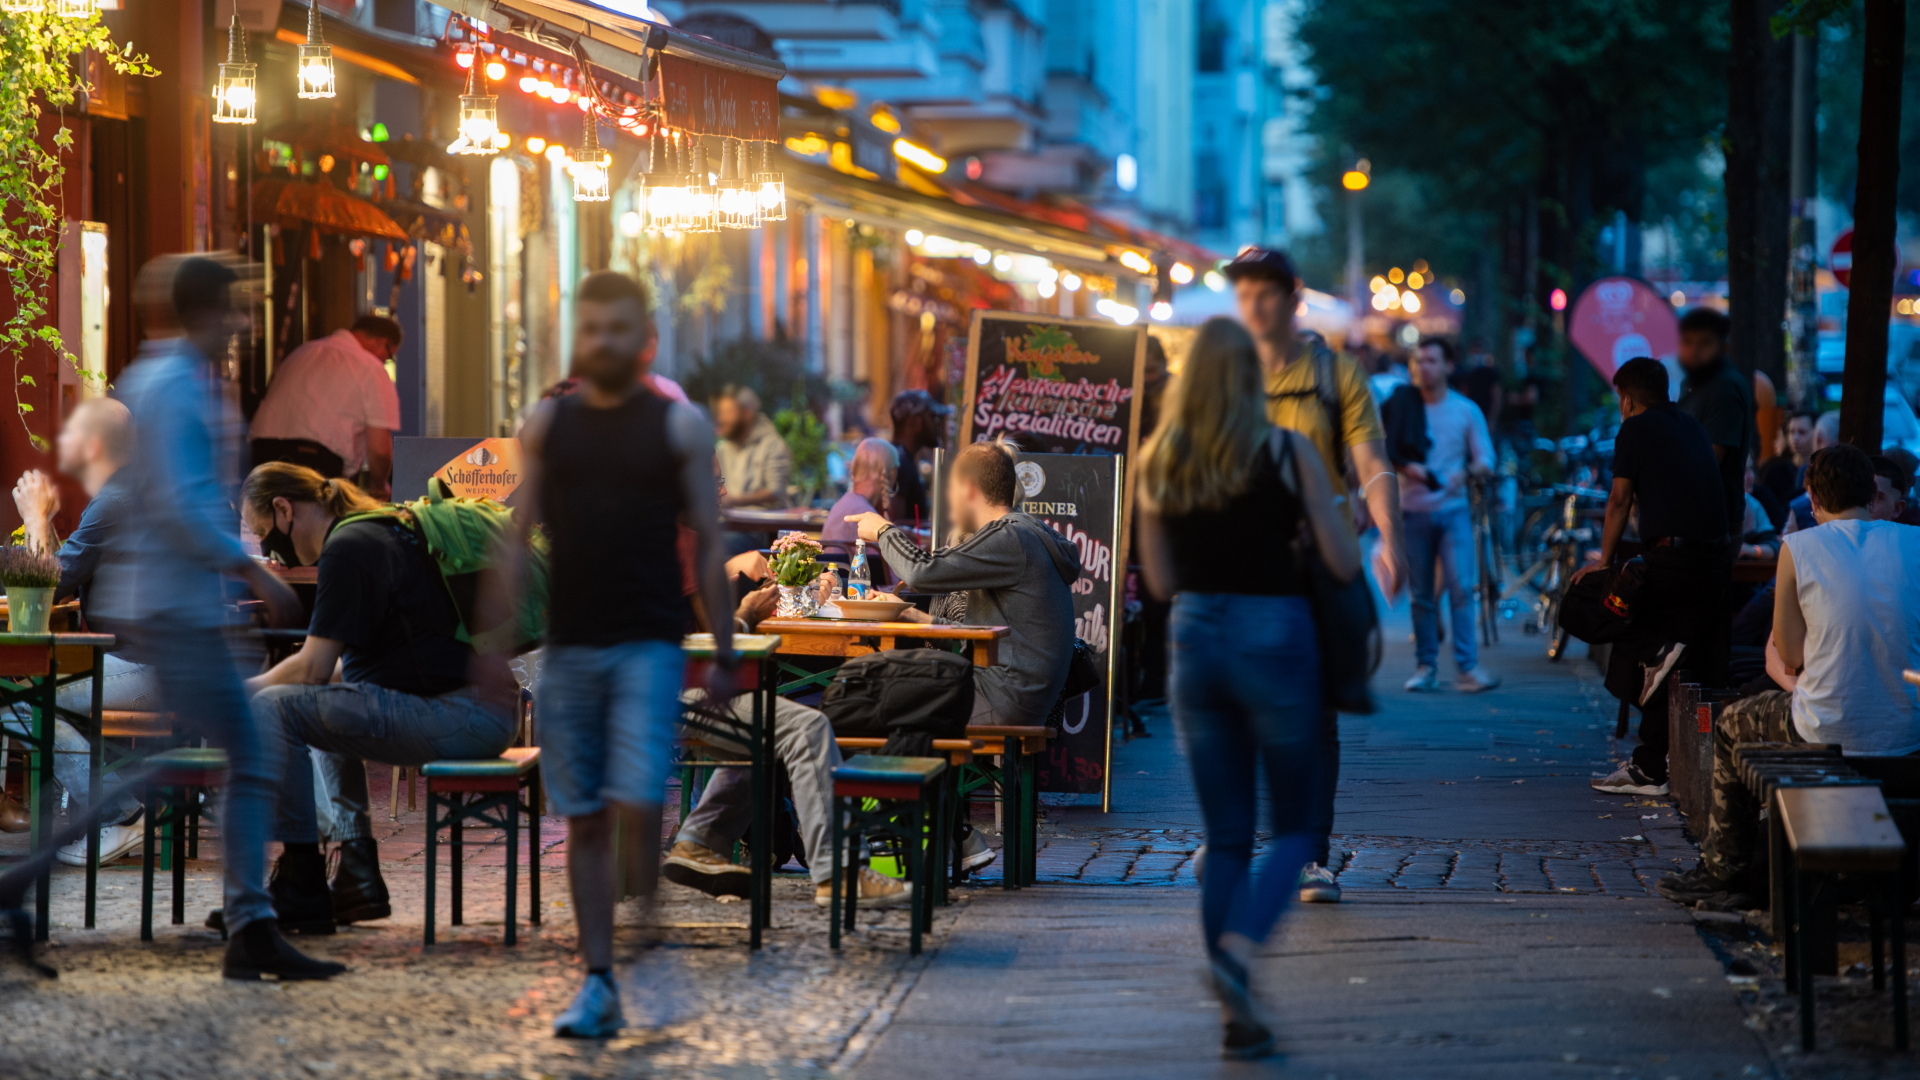 Menschen sitzen in Restaurants und Bars in Friedrichshain. In einigen deutschen Städten werden wegen gestiegener Coronafallzahlen wieder schärfere Kontaktbeschränkungen eingeführt. | dpa